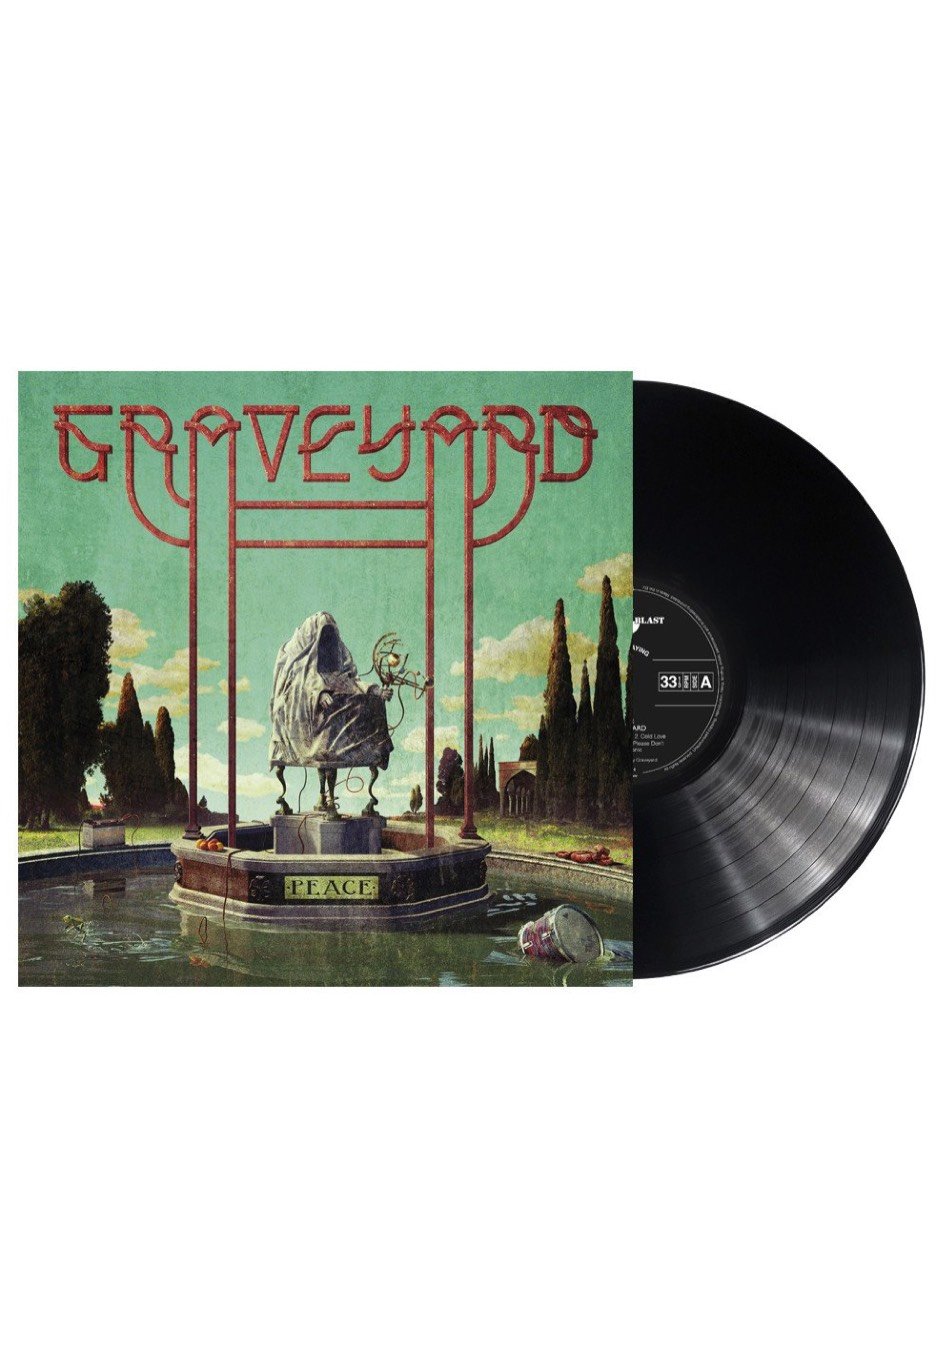 Graveyard - Peace - Vinyl